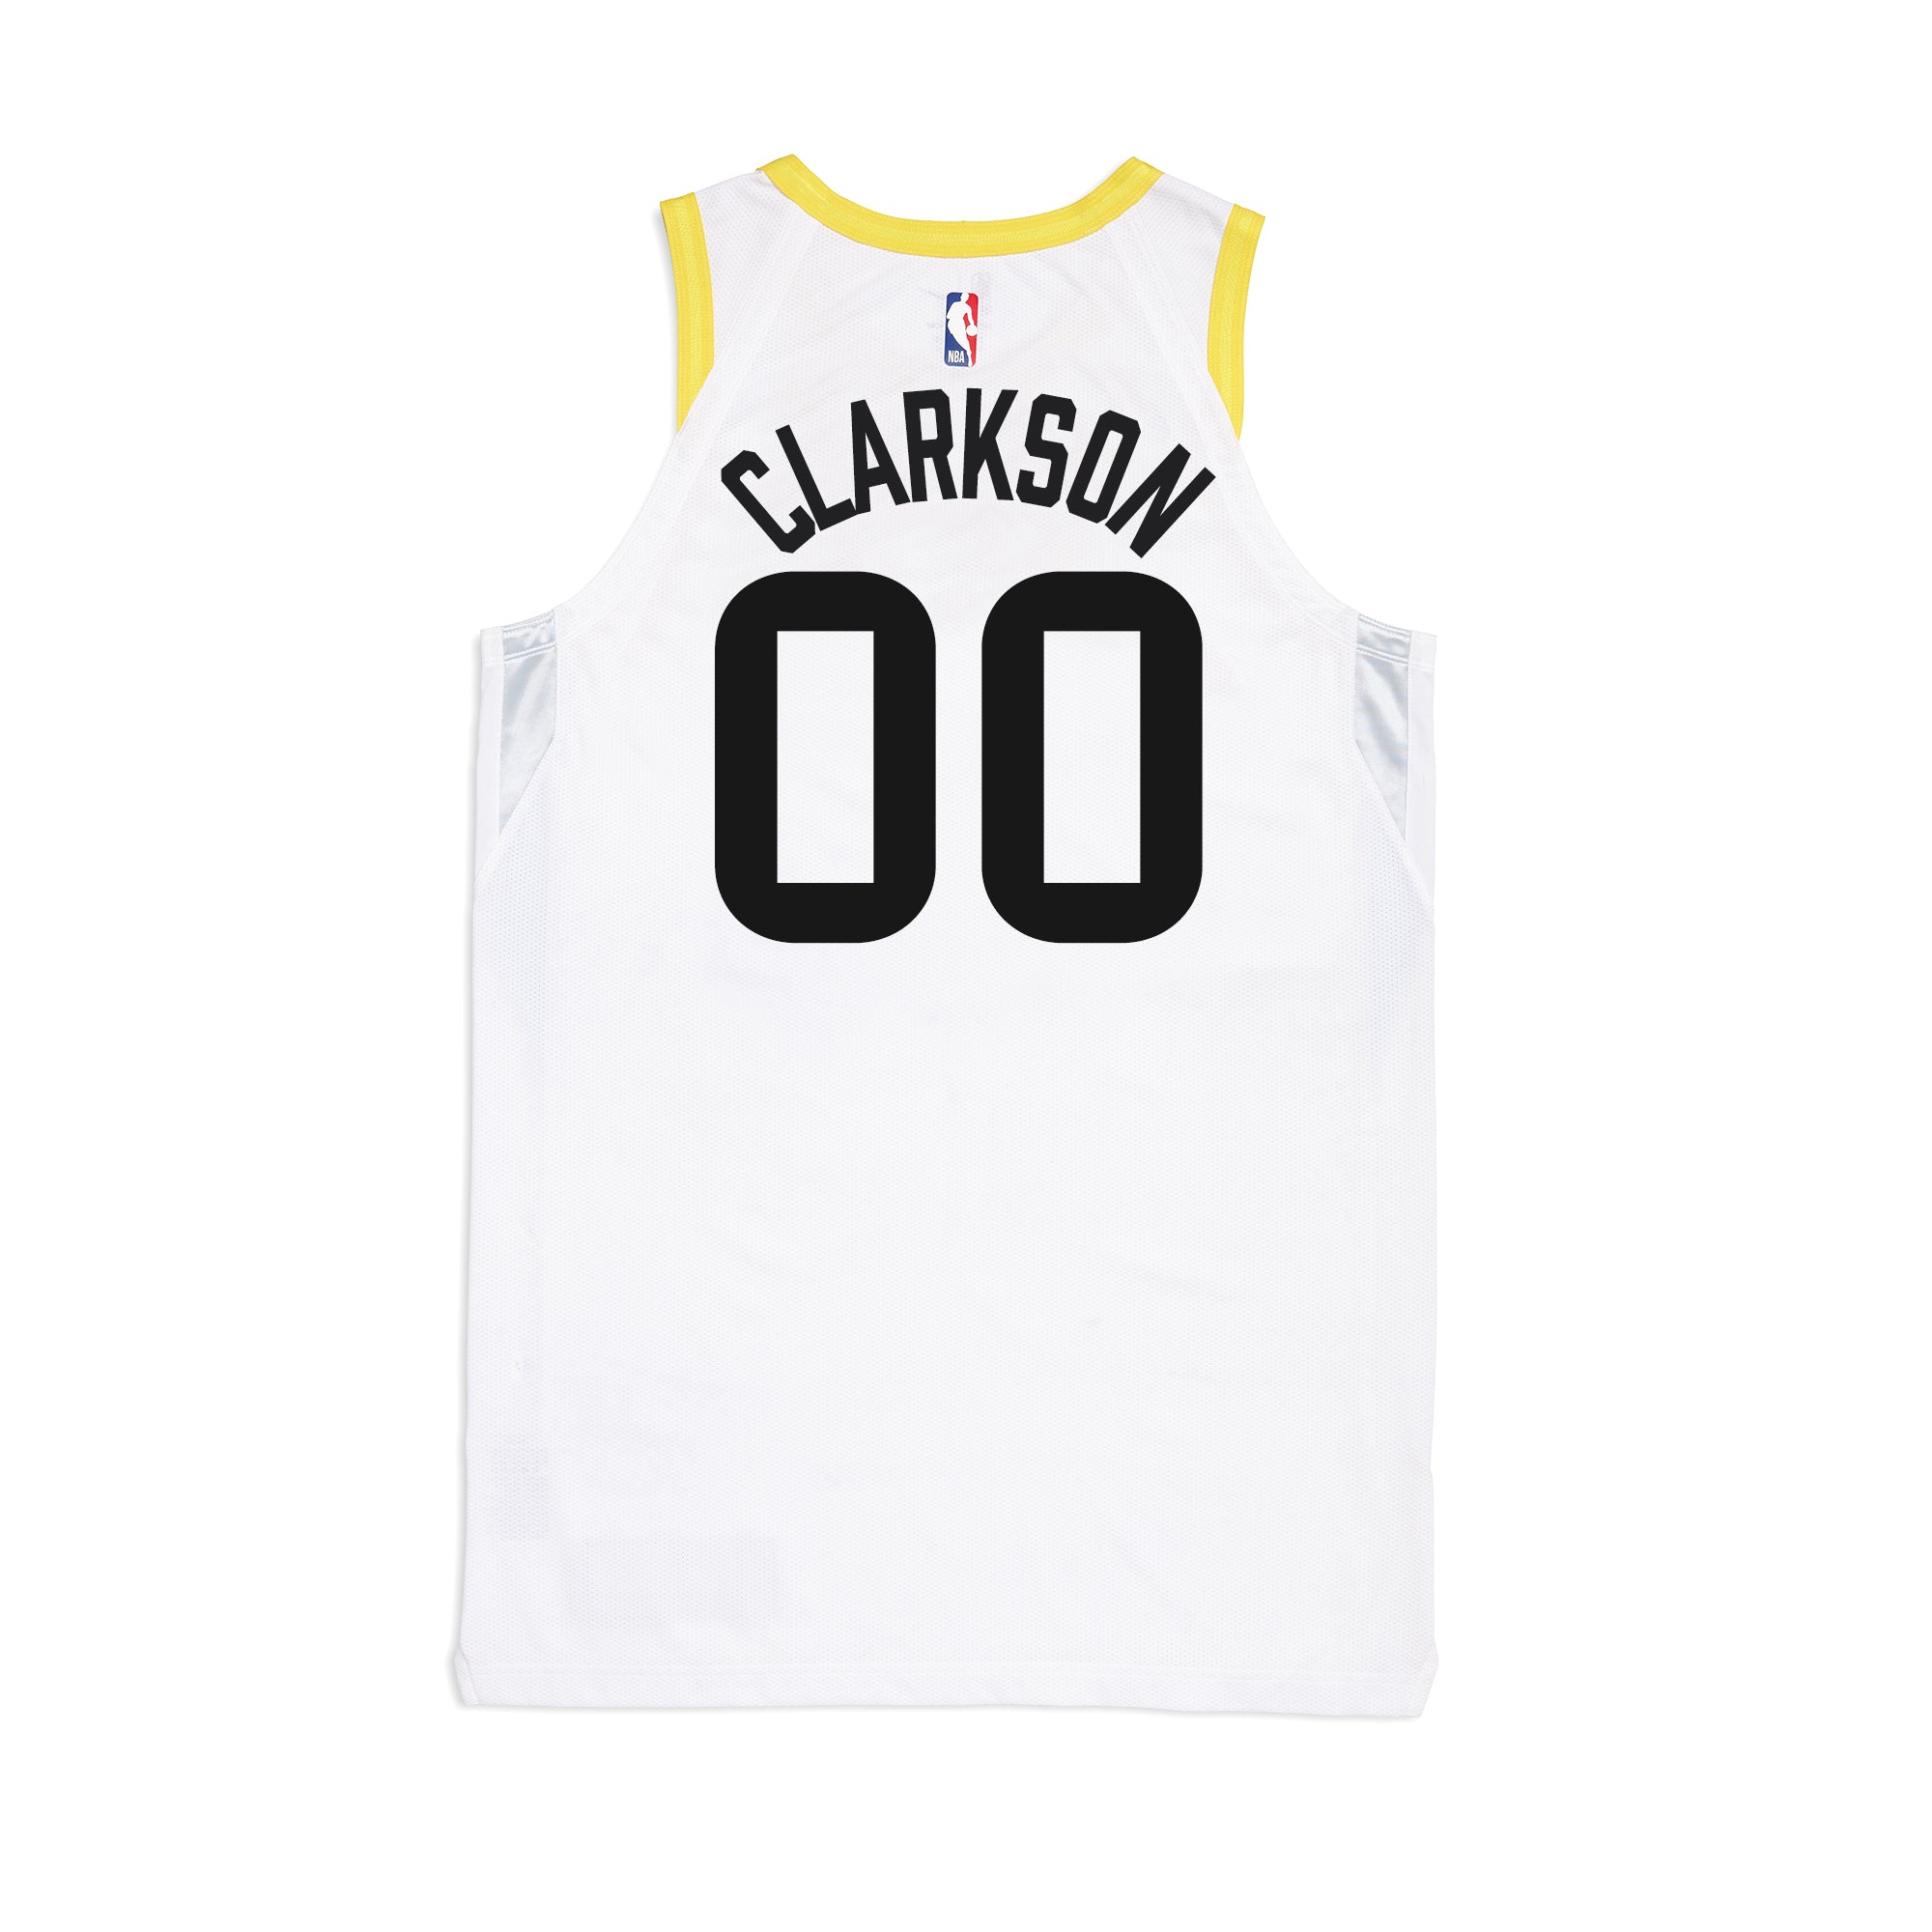 Lakers New Nike Jerseys  Nike jersey, New nike, Jordan clarkson